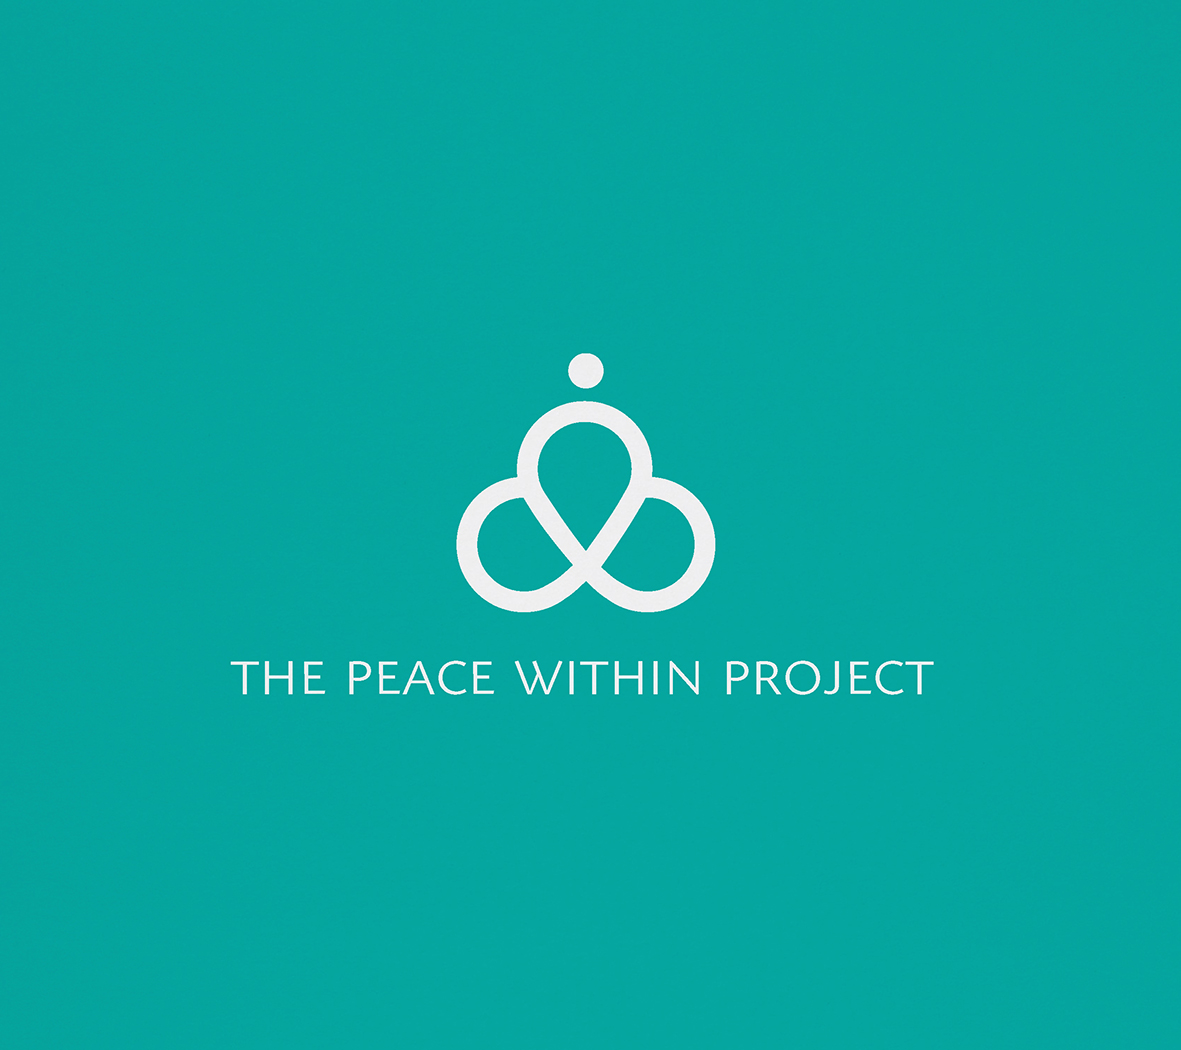 Identité visuelle de l'association The Peace within project